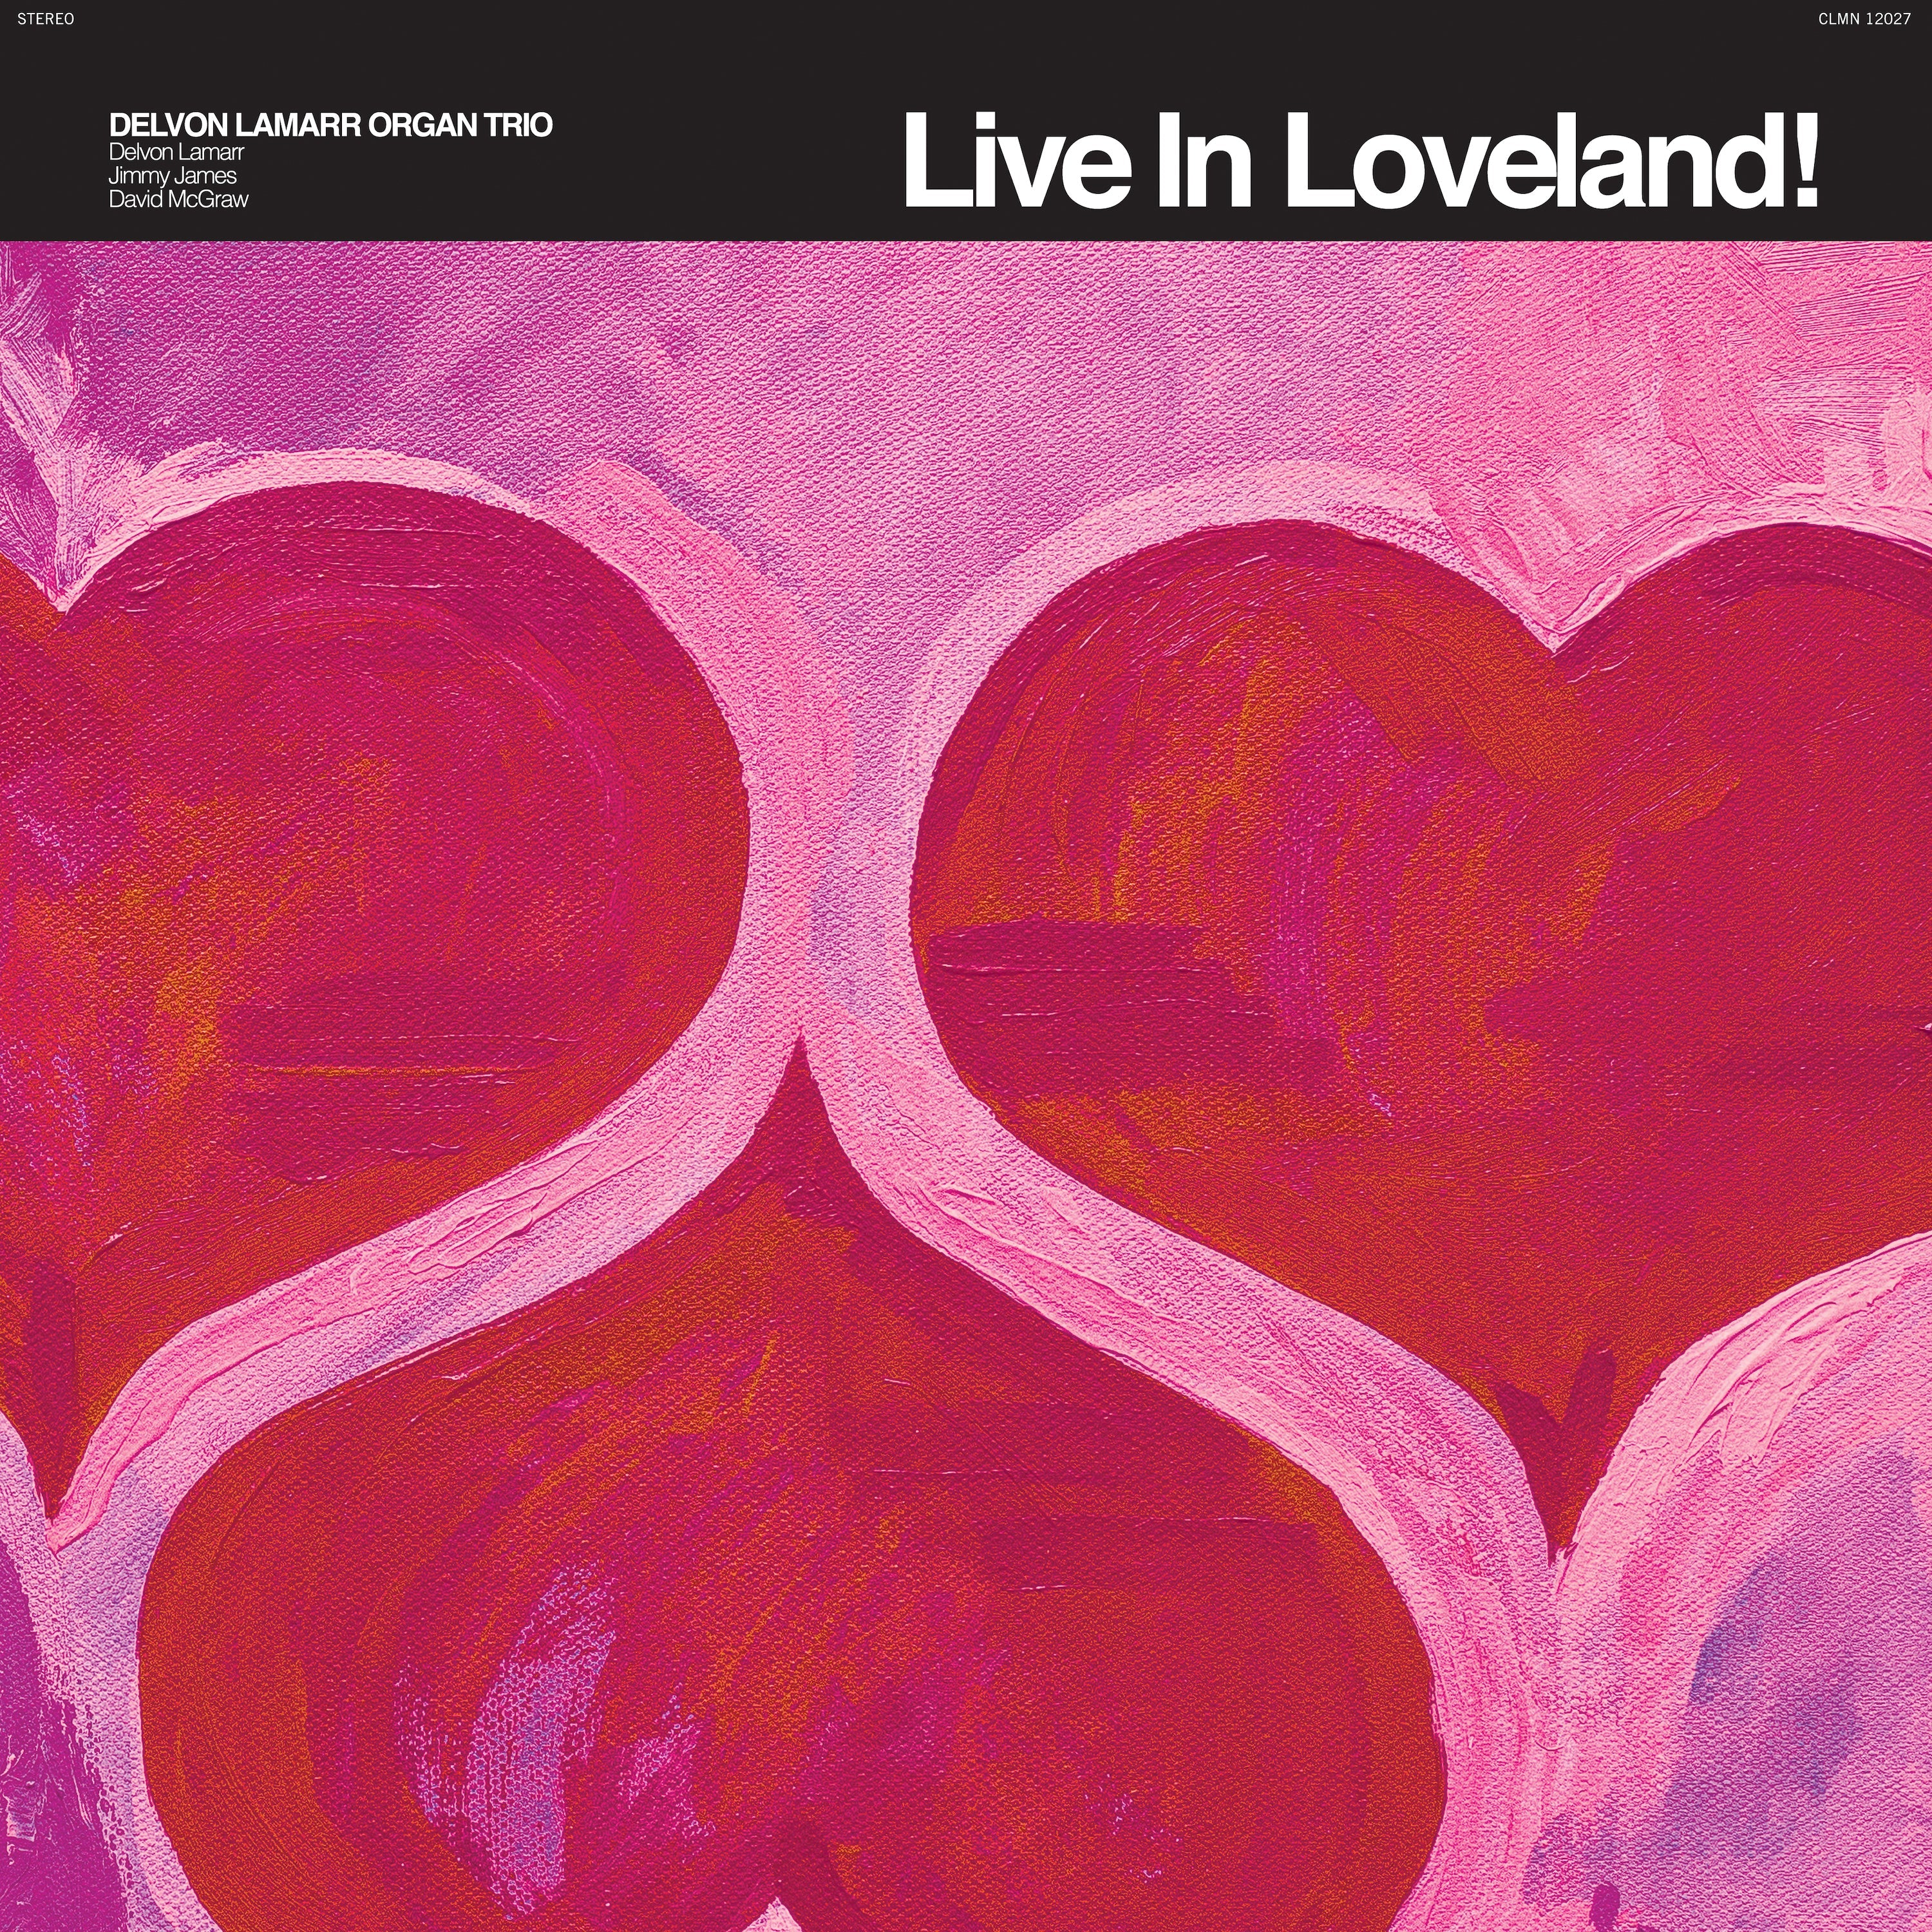 [UNSEALED] Delvon Lamarr Organ Trio - Live In Loveland! [2-lp Pink Vinyl]